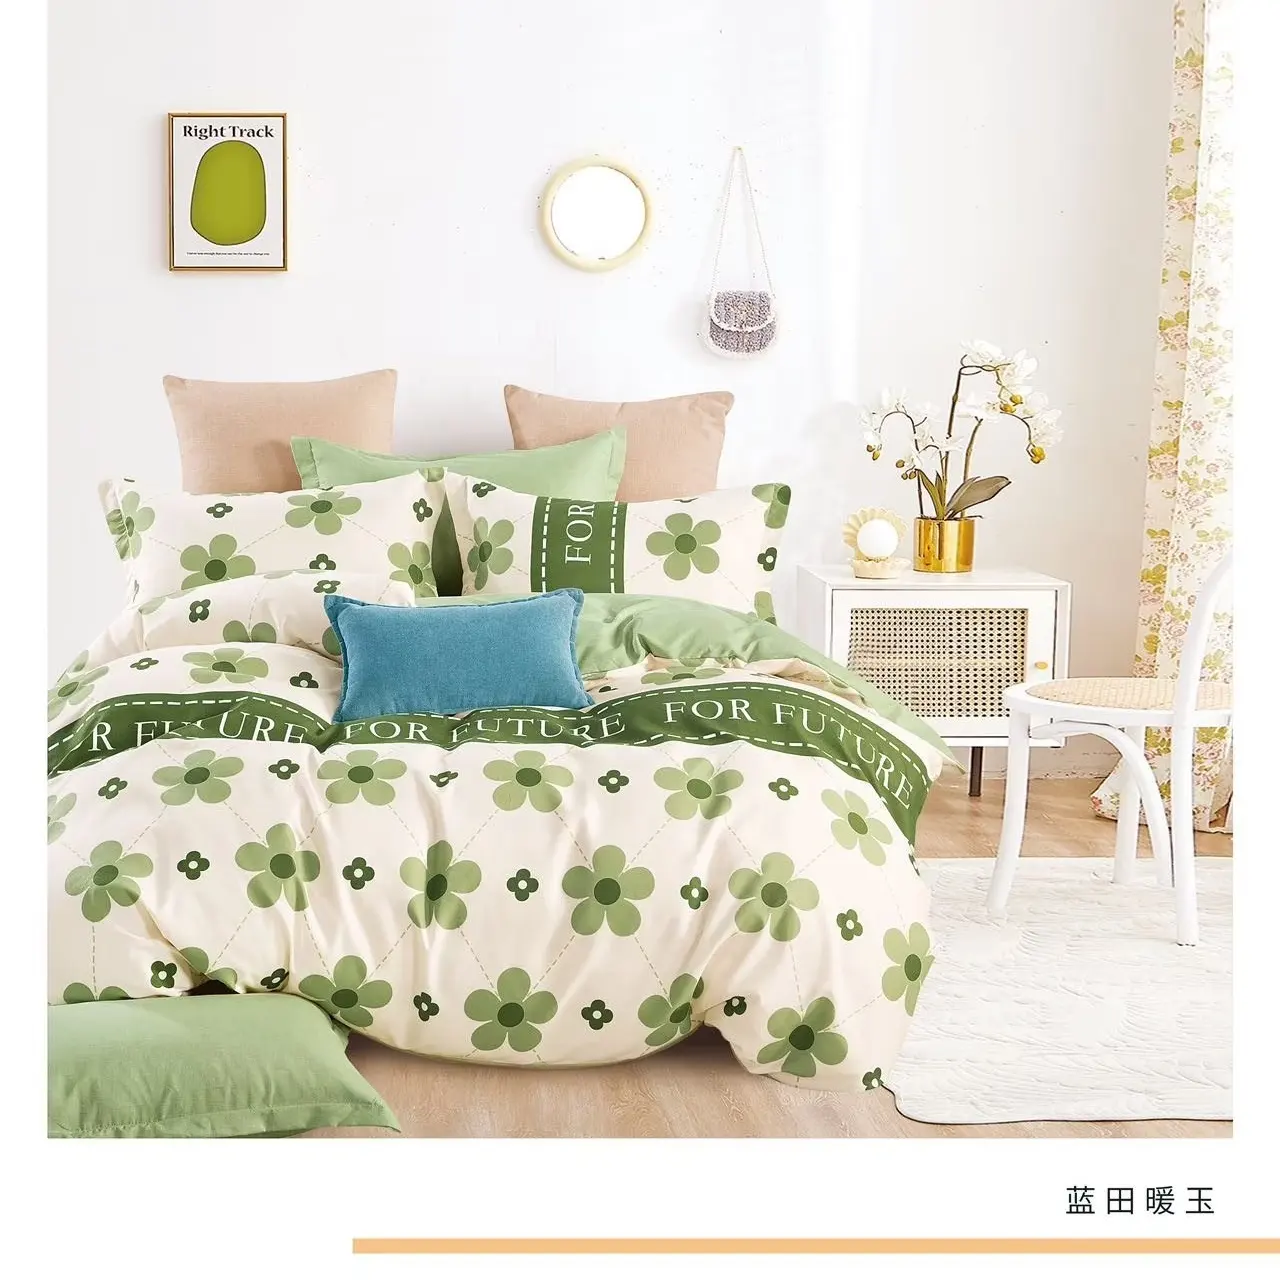 Bán Hot Trung Quốc sản xuất chất lượng sang trọng Home bedding Set cotton tấm ga trải giường với Comforter bedding Set